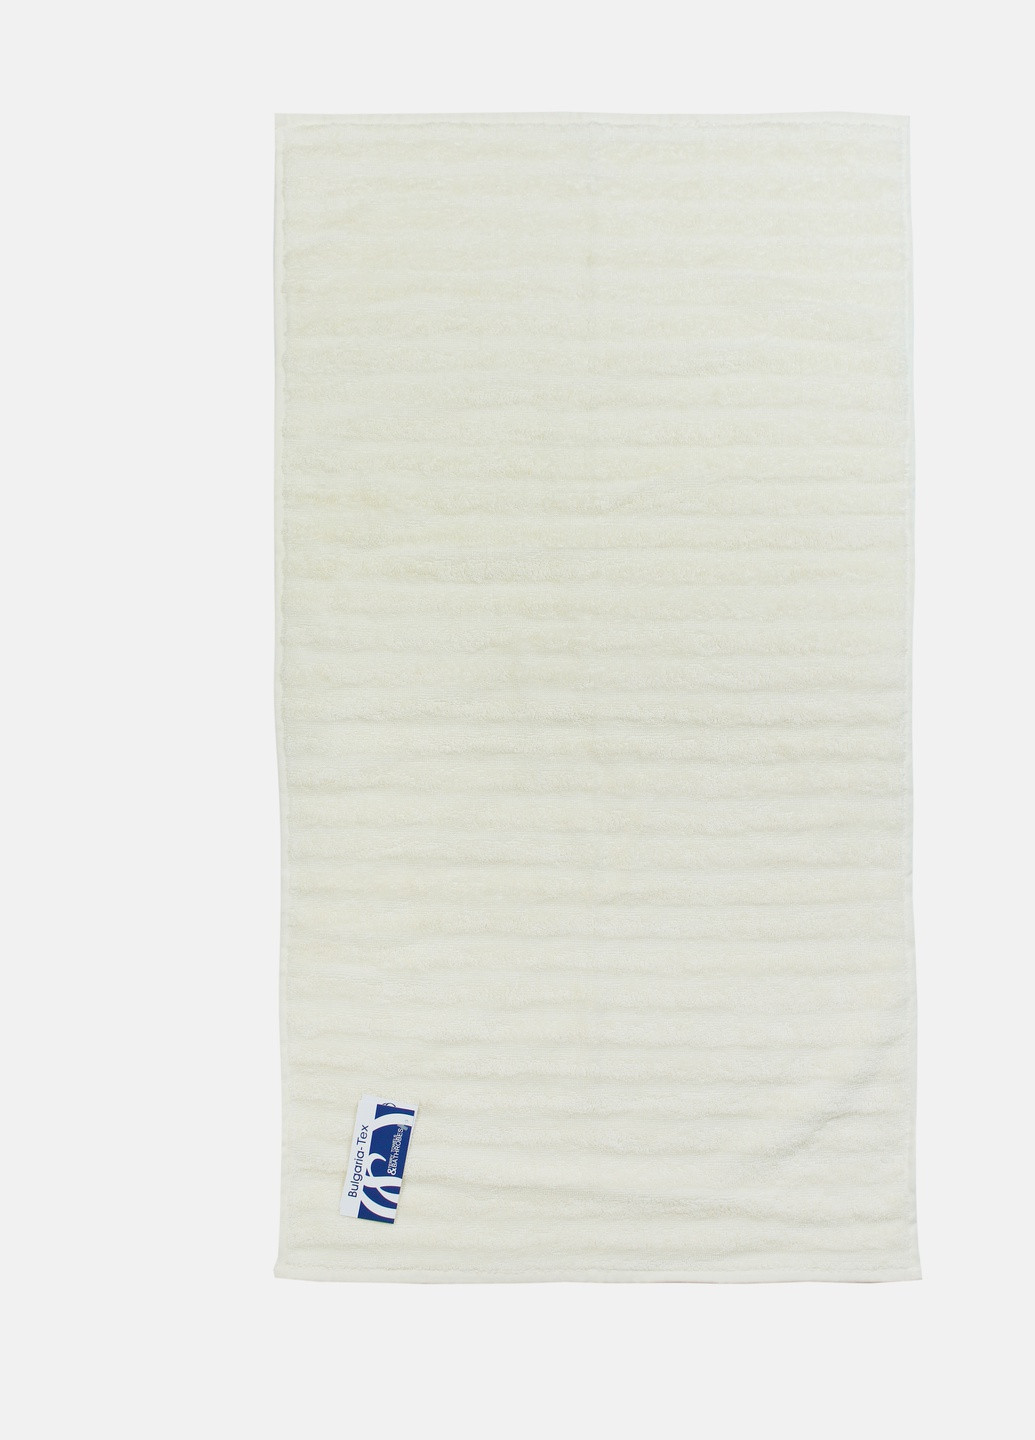 Bulgaria-Tex полотенце махровое сity, жаккардовое, кремовое, размер 50x90 cm бежевый производство - Болгария